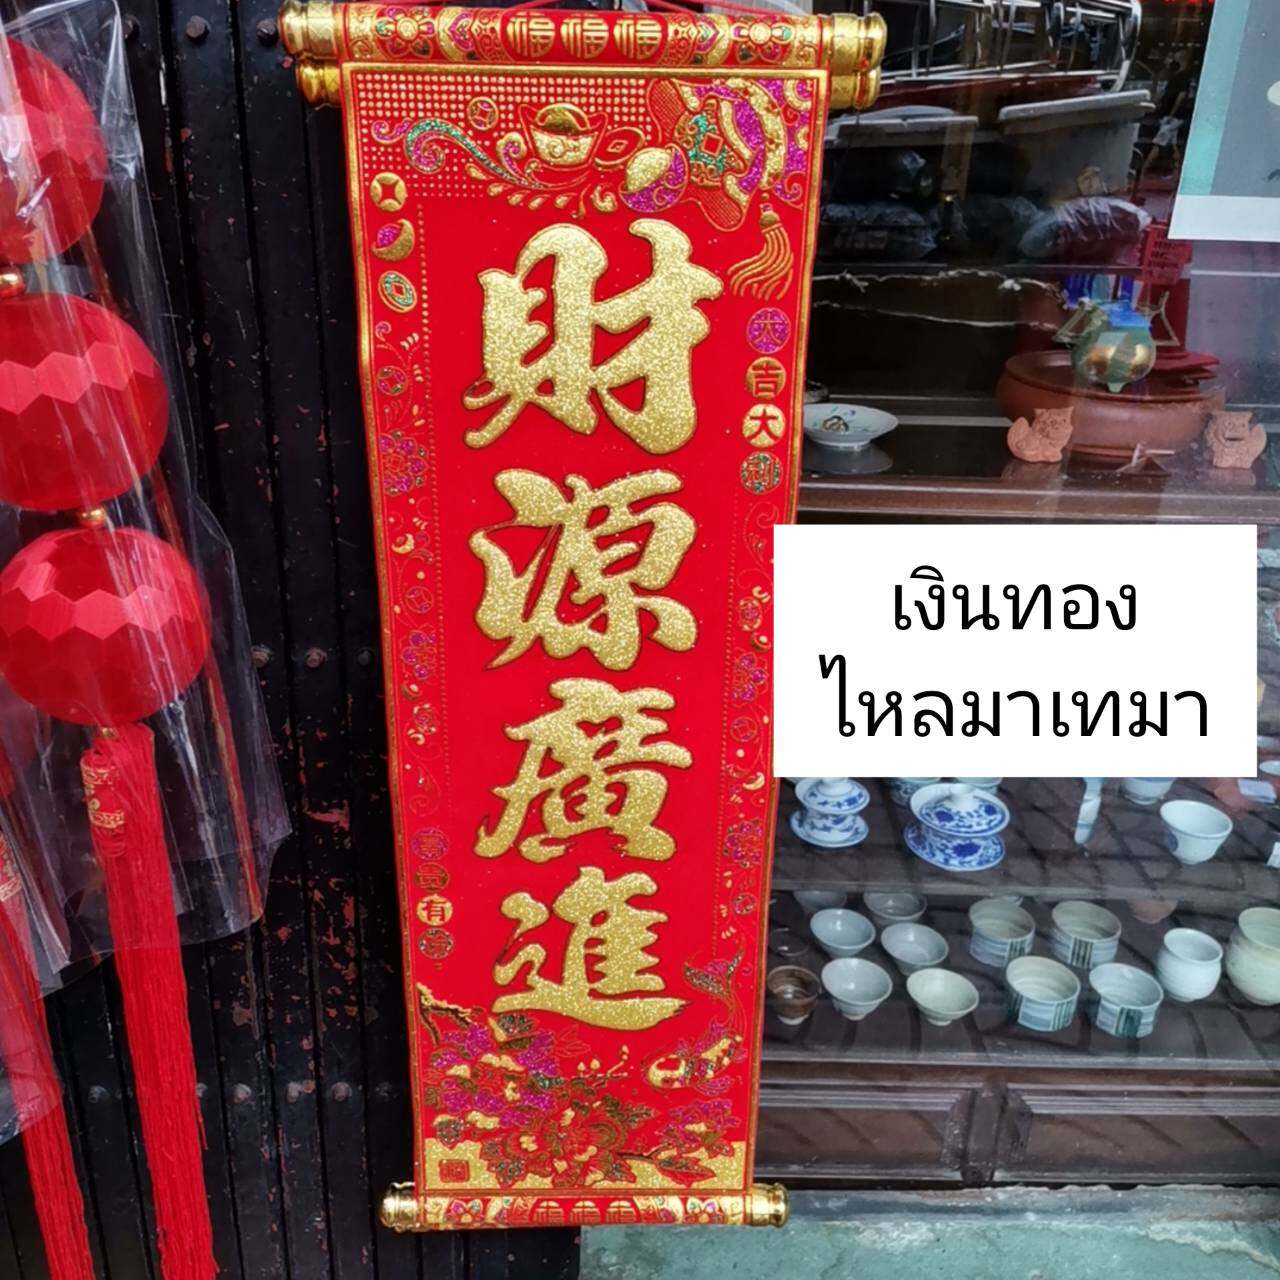 ป้านคำอวยพรภาษาจีน4คำ ขนาดกว้าง25cm สูง 60cm เงินทองไหลมาเทมา